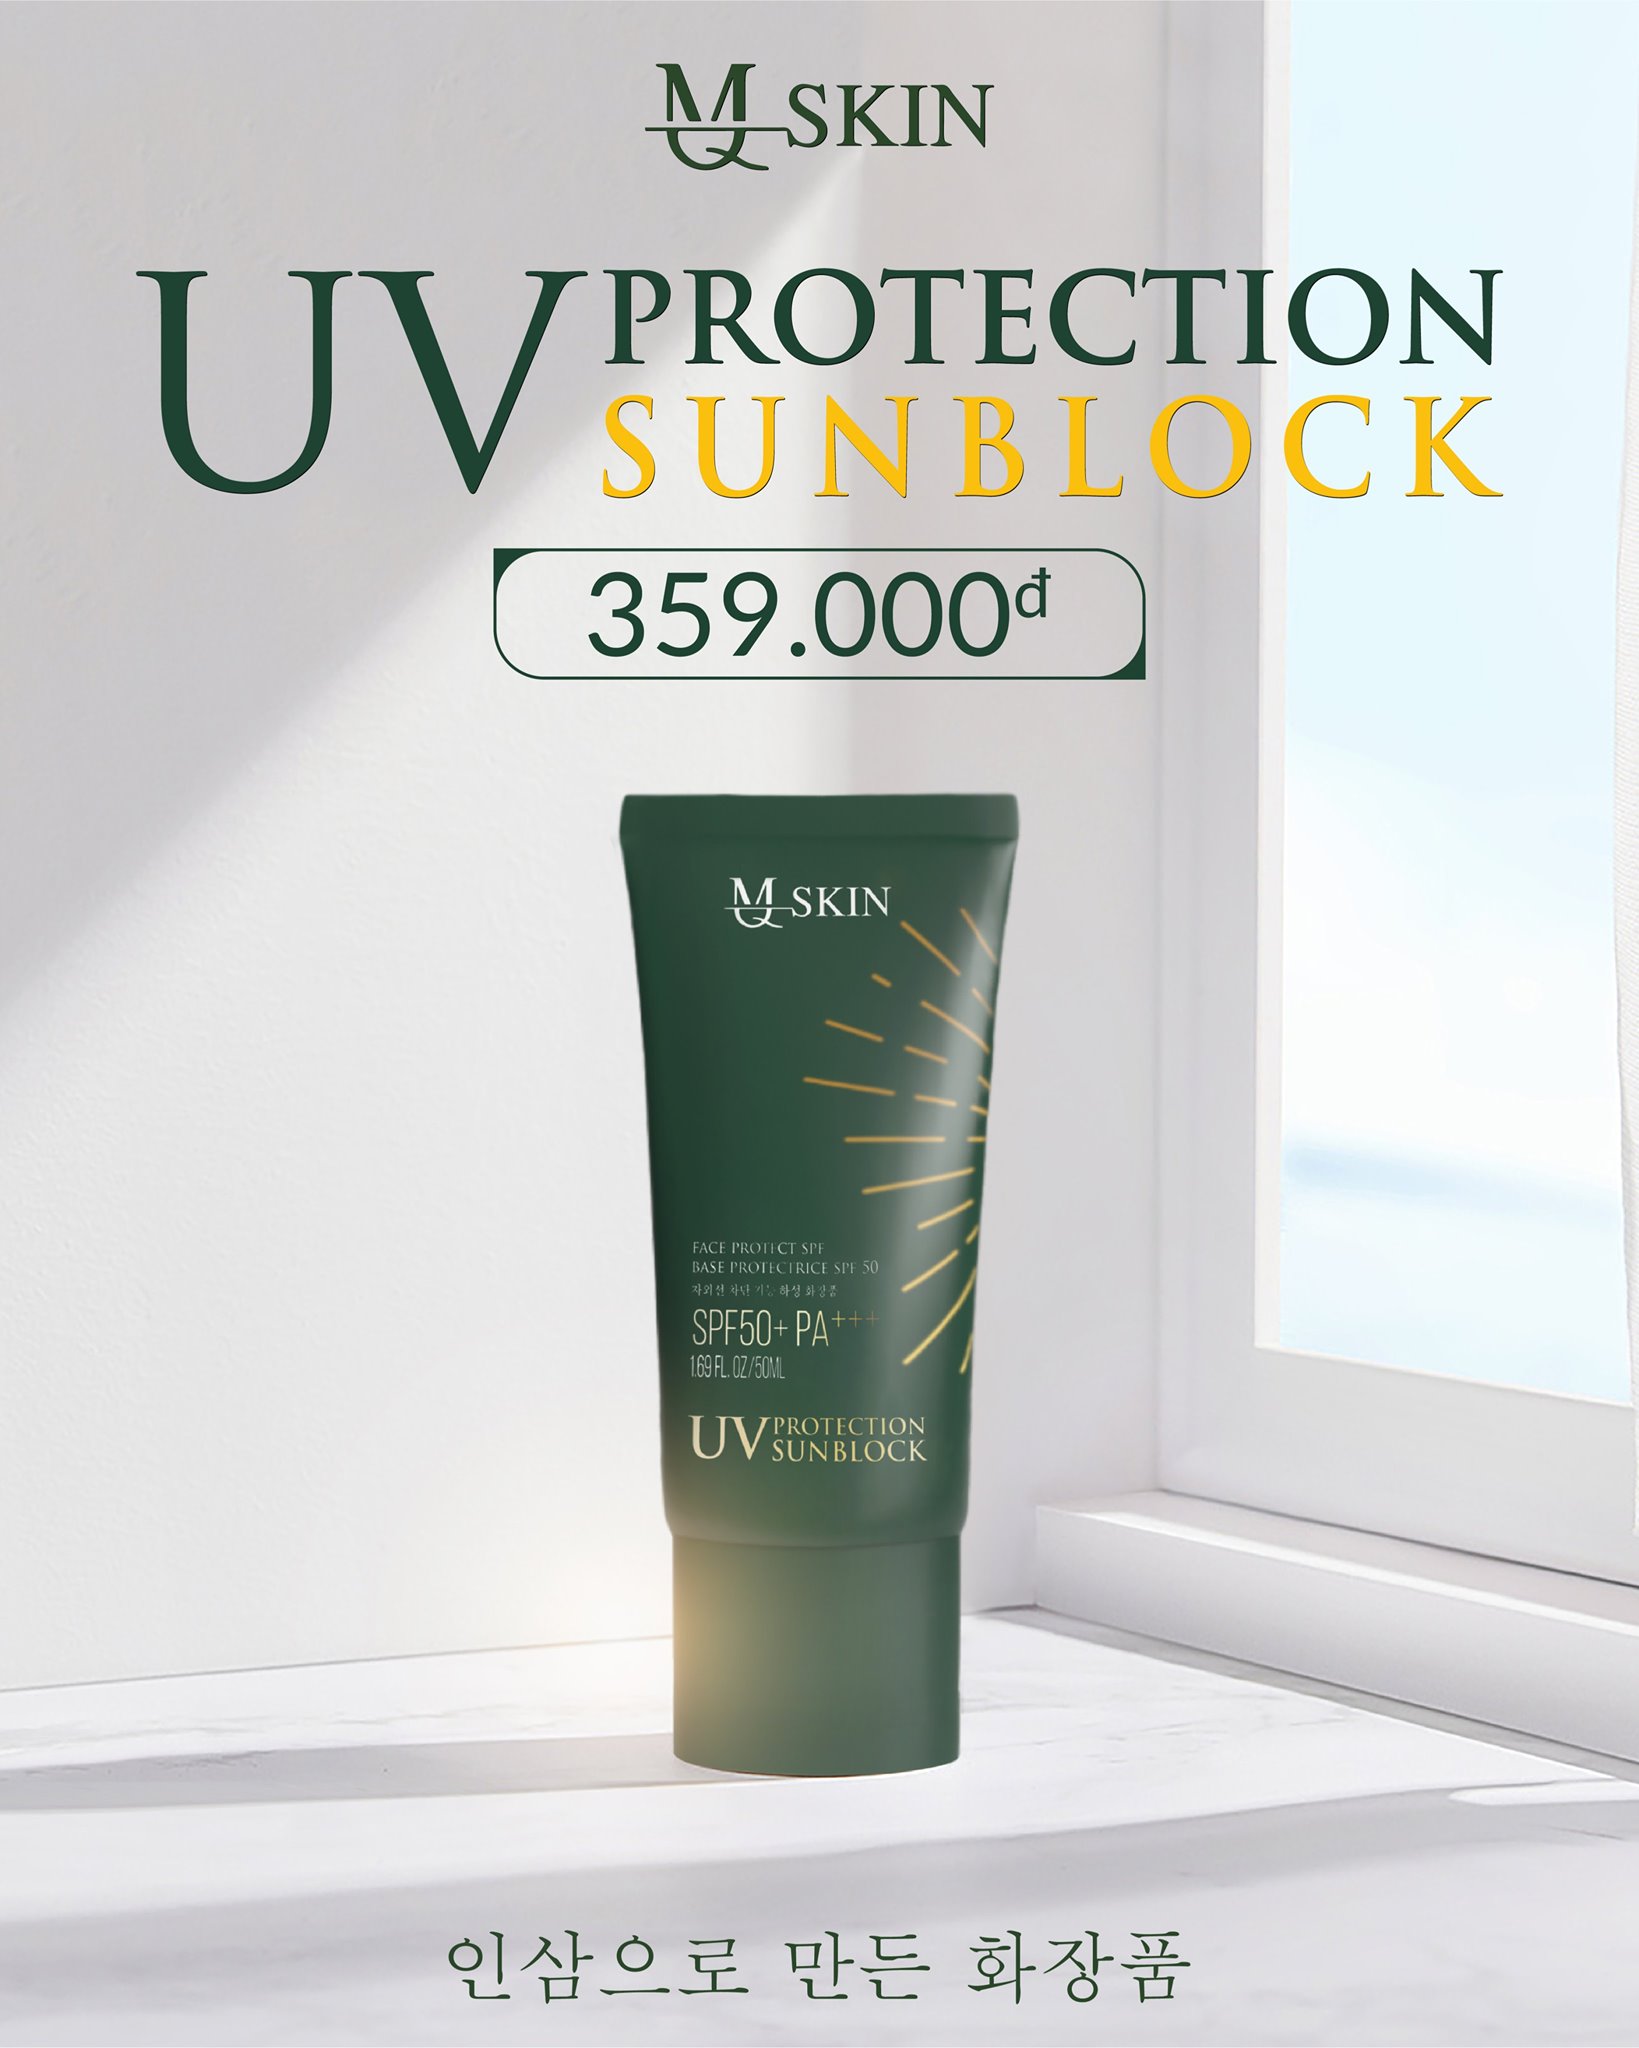 ☀️ Bảo vệ da hiệu quả với kem chống nắng nhân sâm MQ Skin ☀️